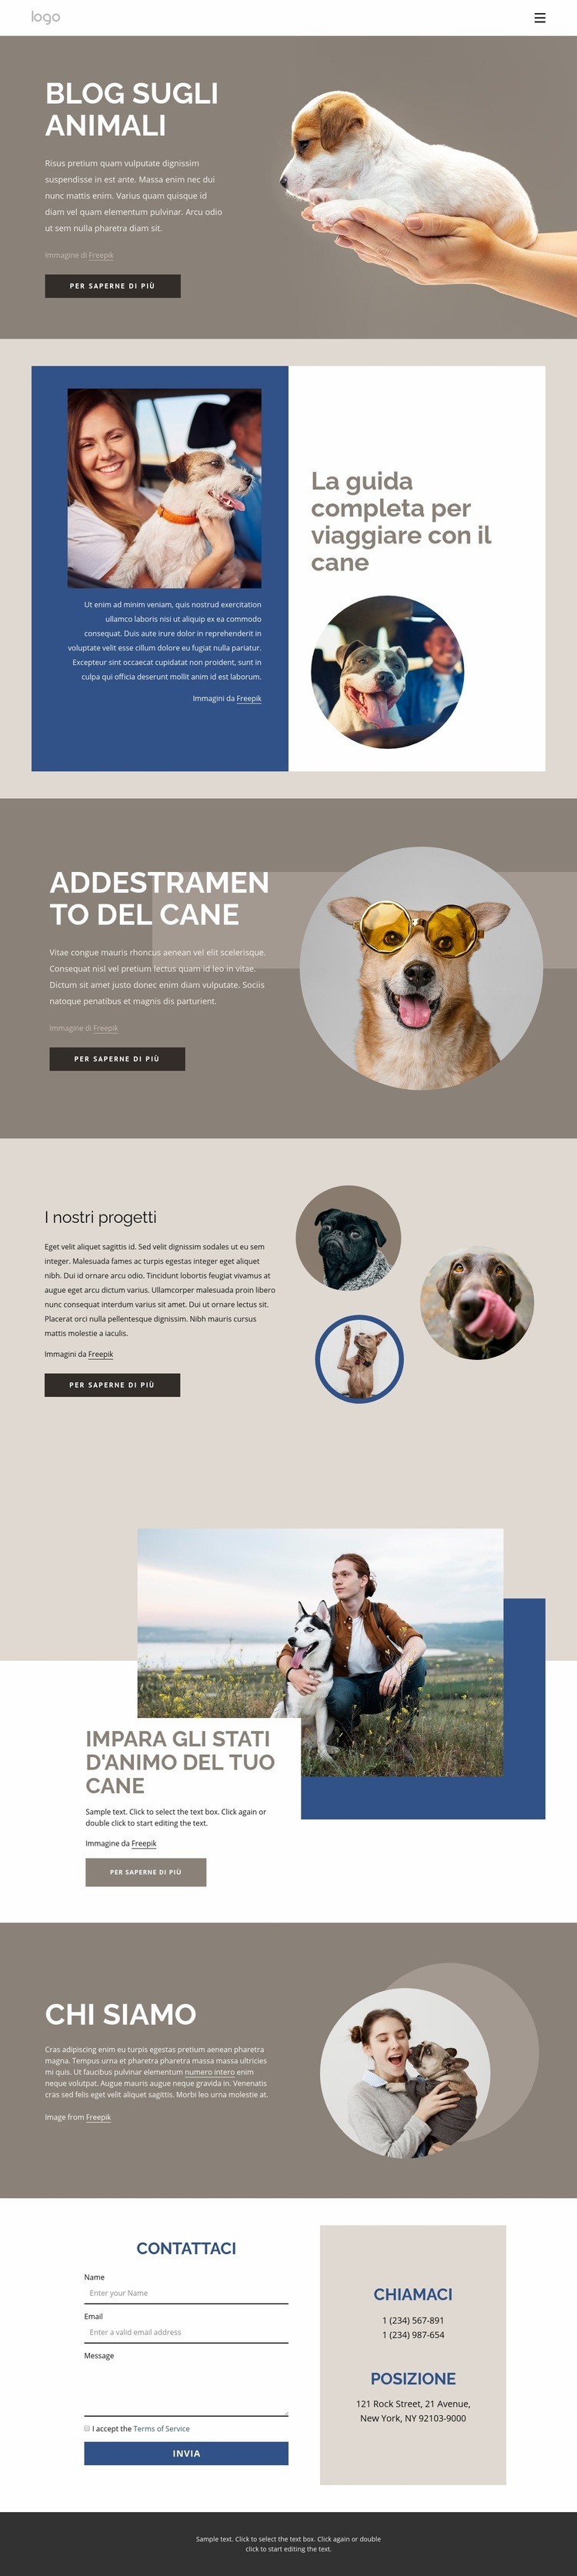 Blog sugli animali domestici Modello HTML5